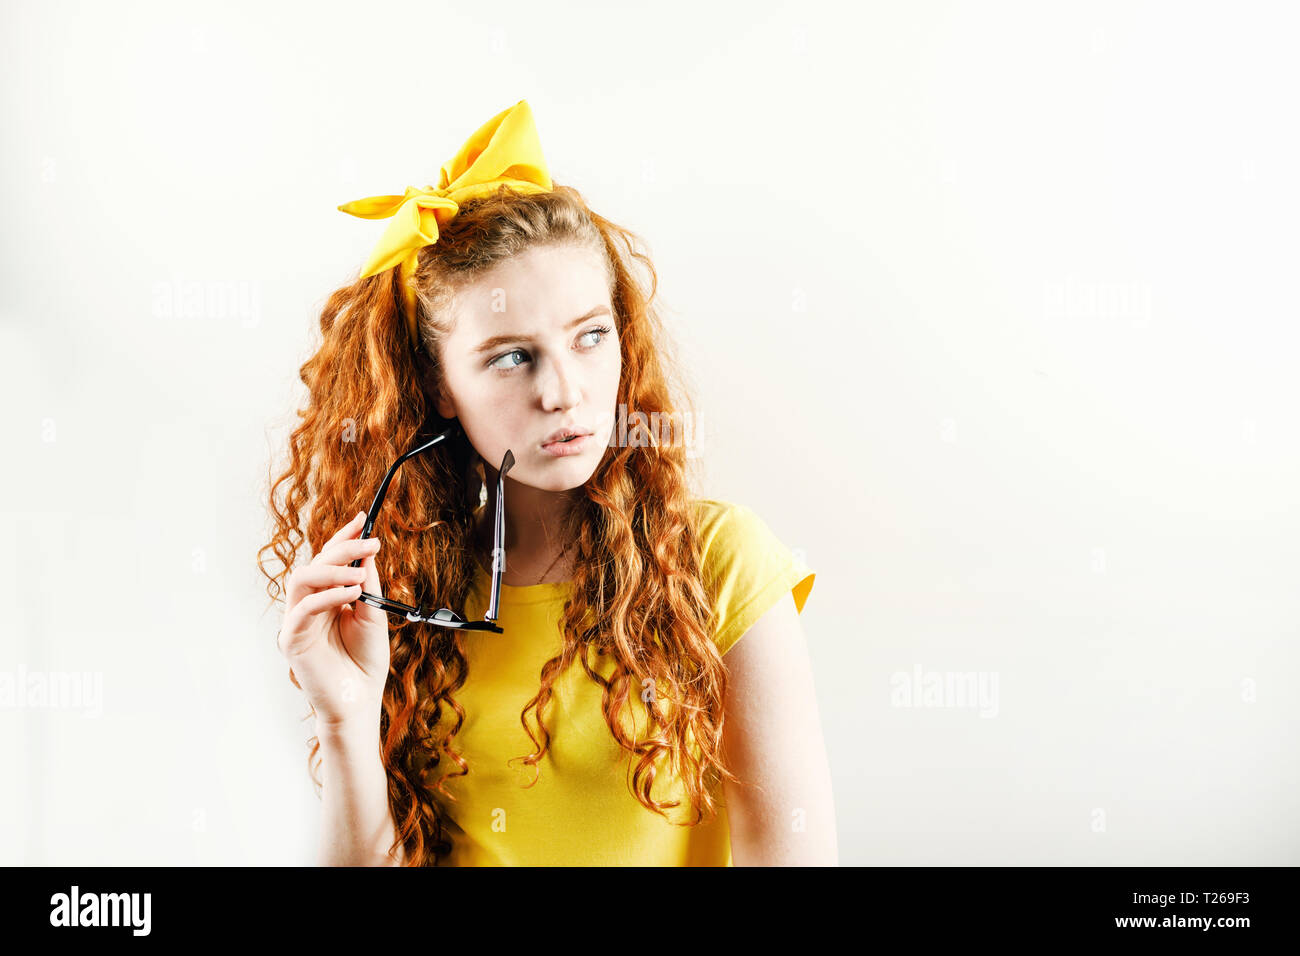 Pensive curly redhead girl avec un arc jaune sur sa tête portant des T-shirt jaune et à la suite des spectacles holding Banque D'Images